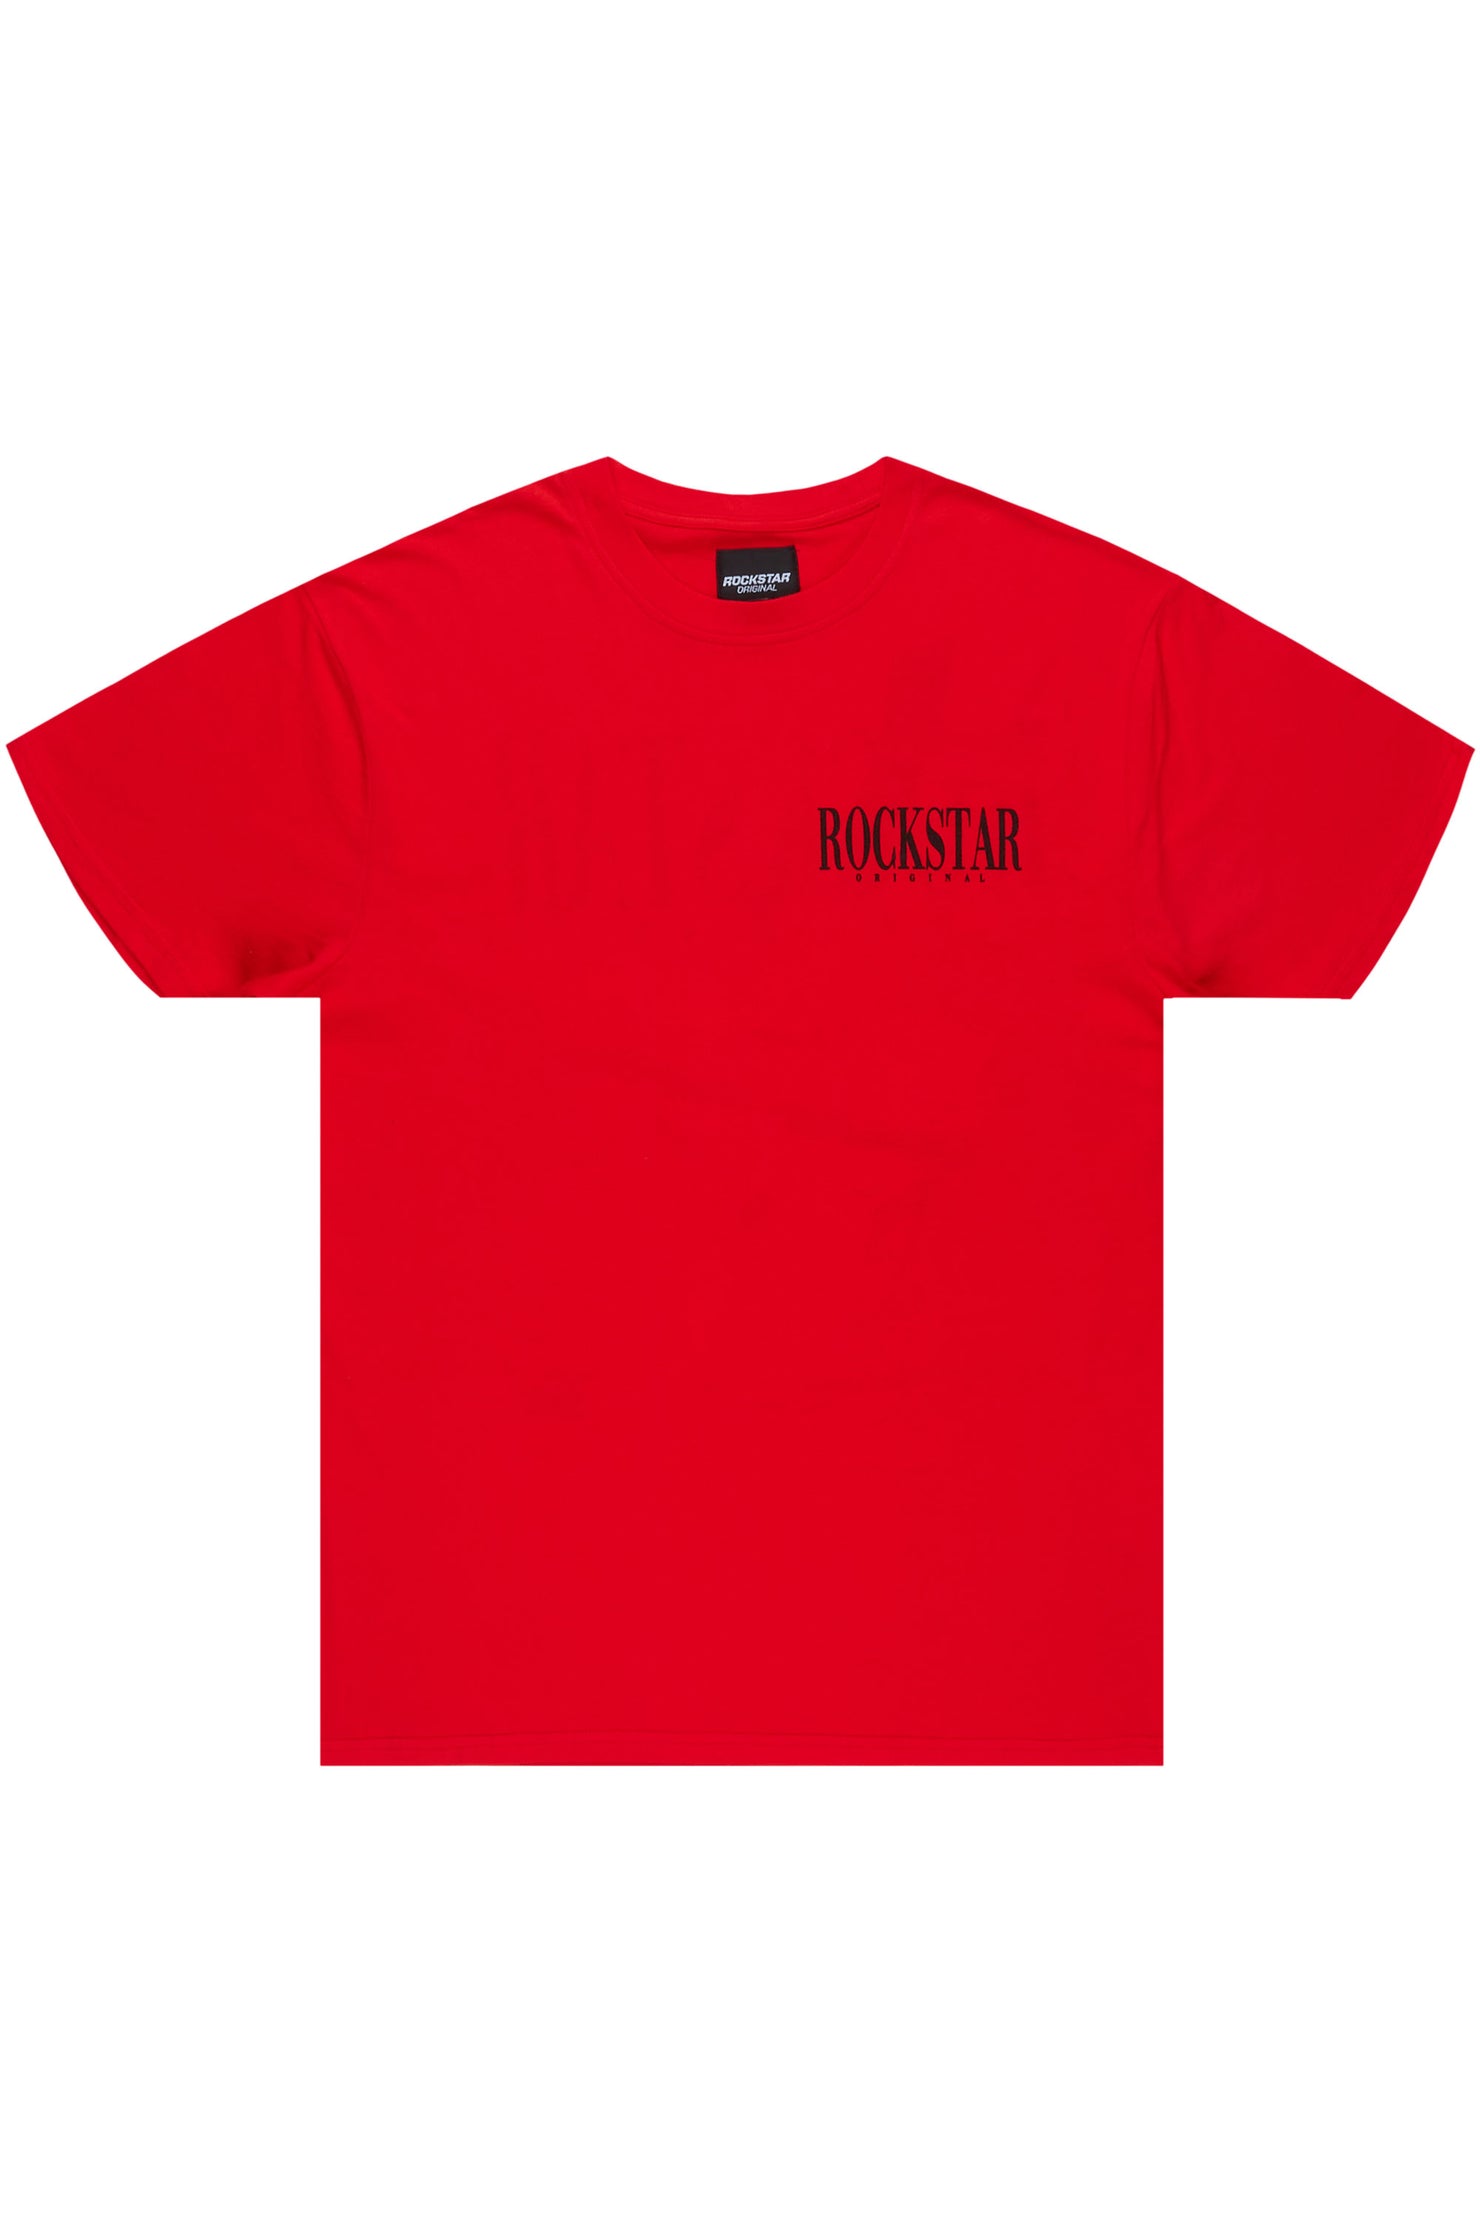 Dayte Nite Red Graphic T-Shirt